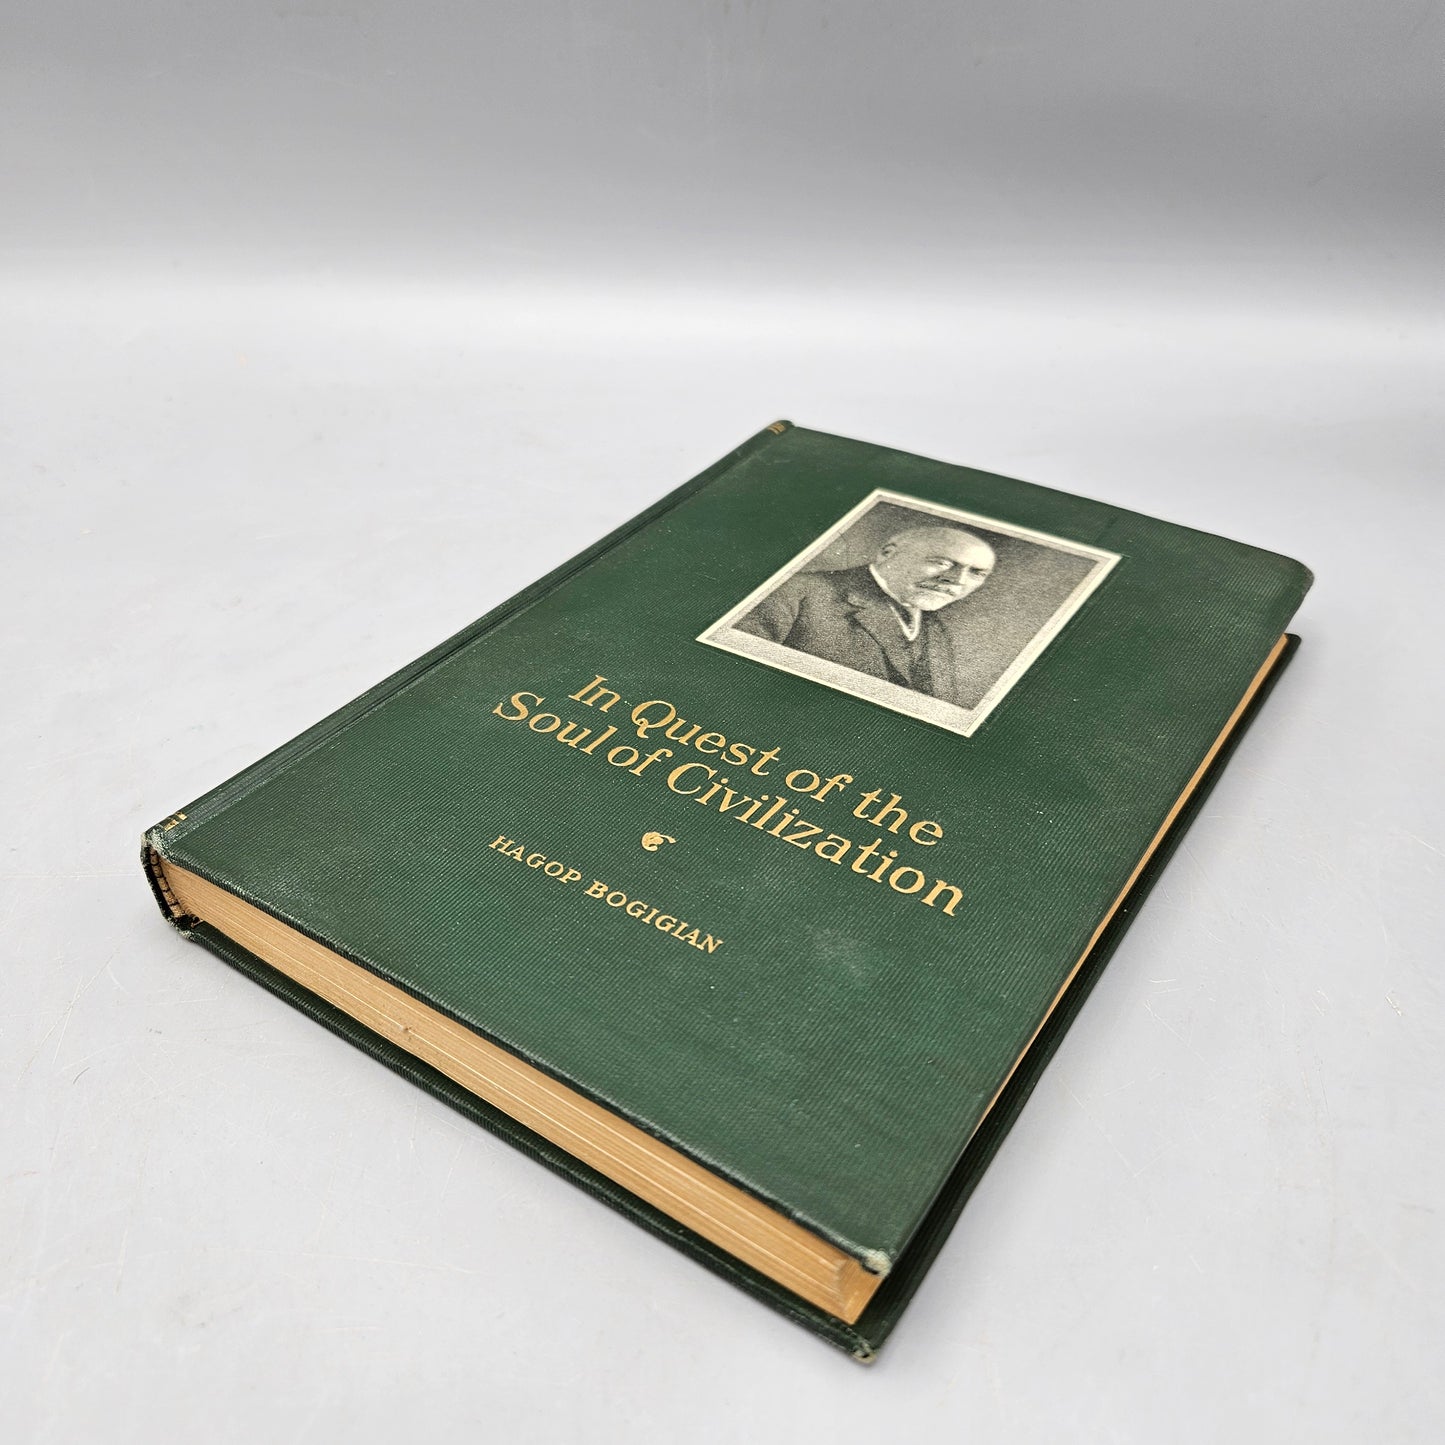 Book: In Quest of the Soul of Civilization Hagop Bogigian 1925